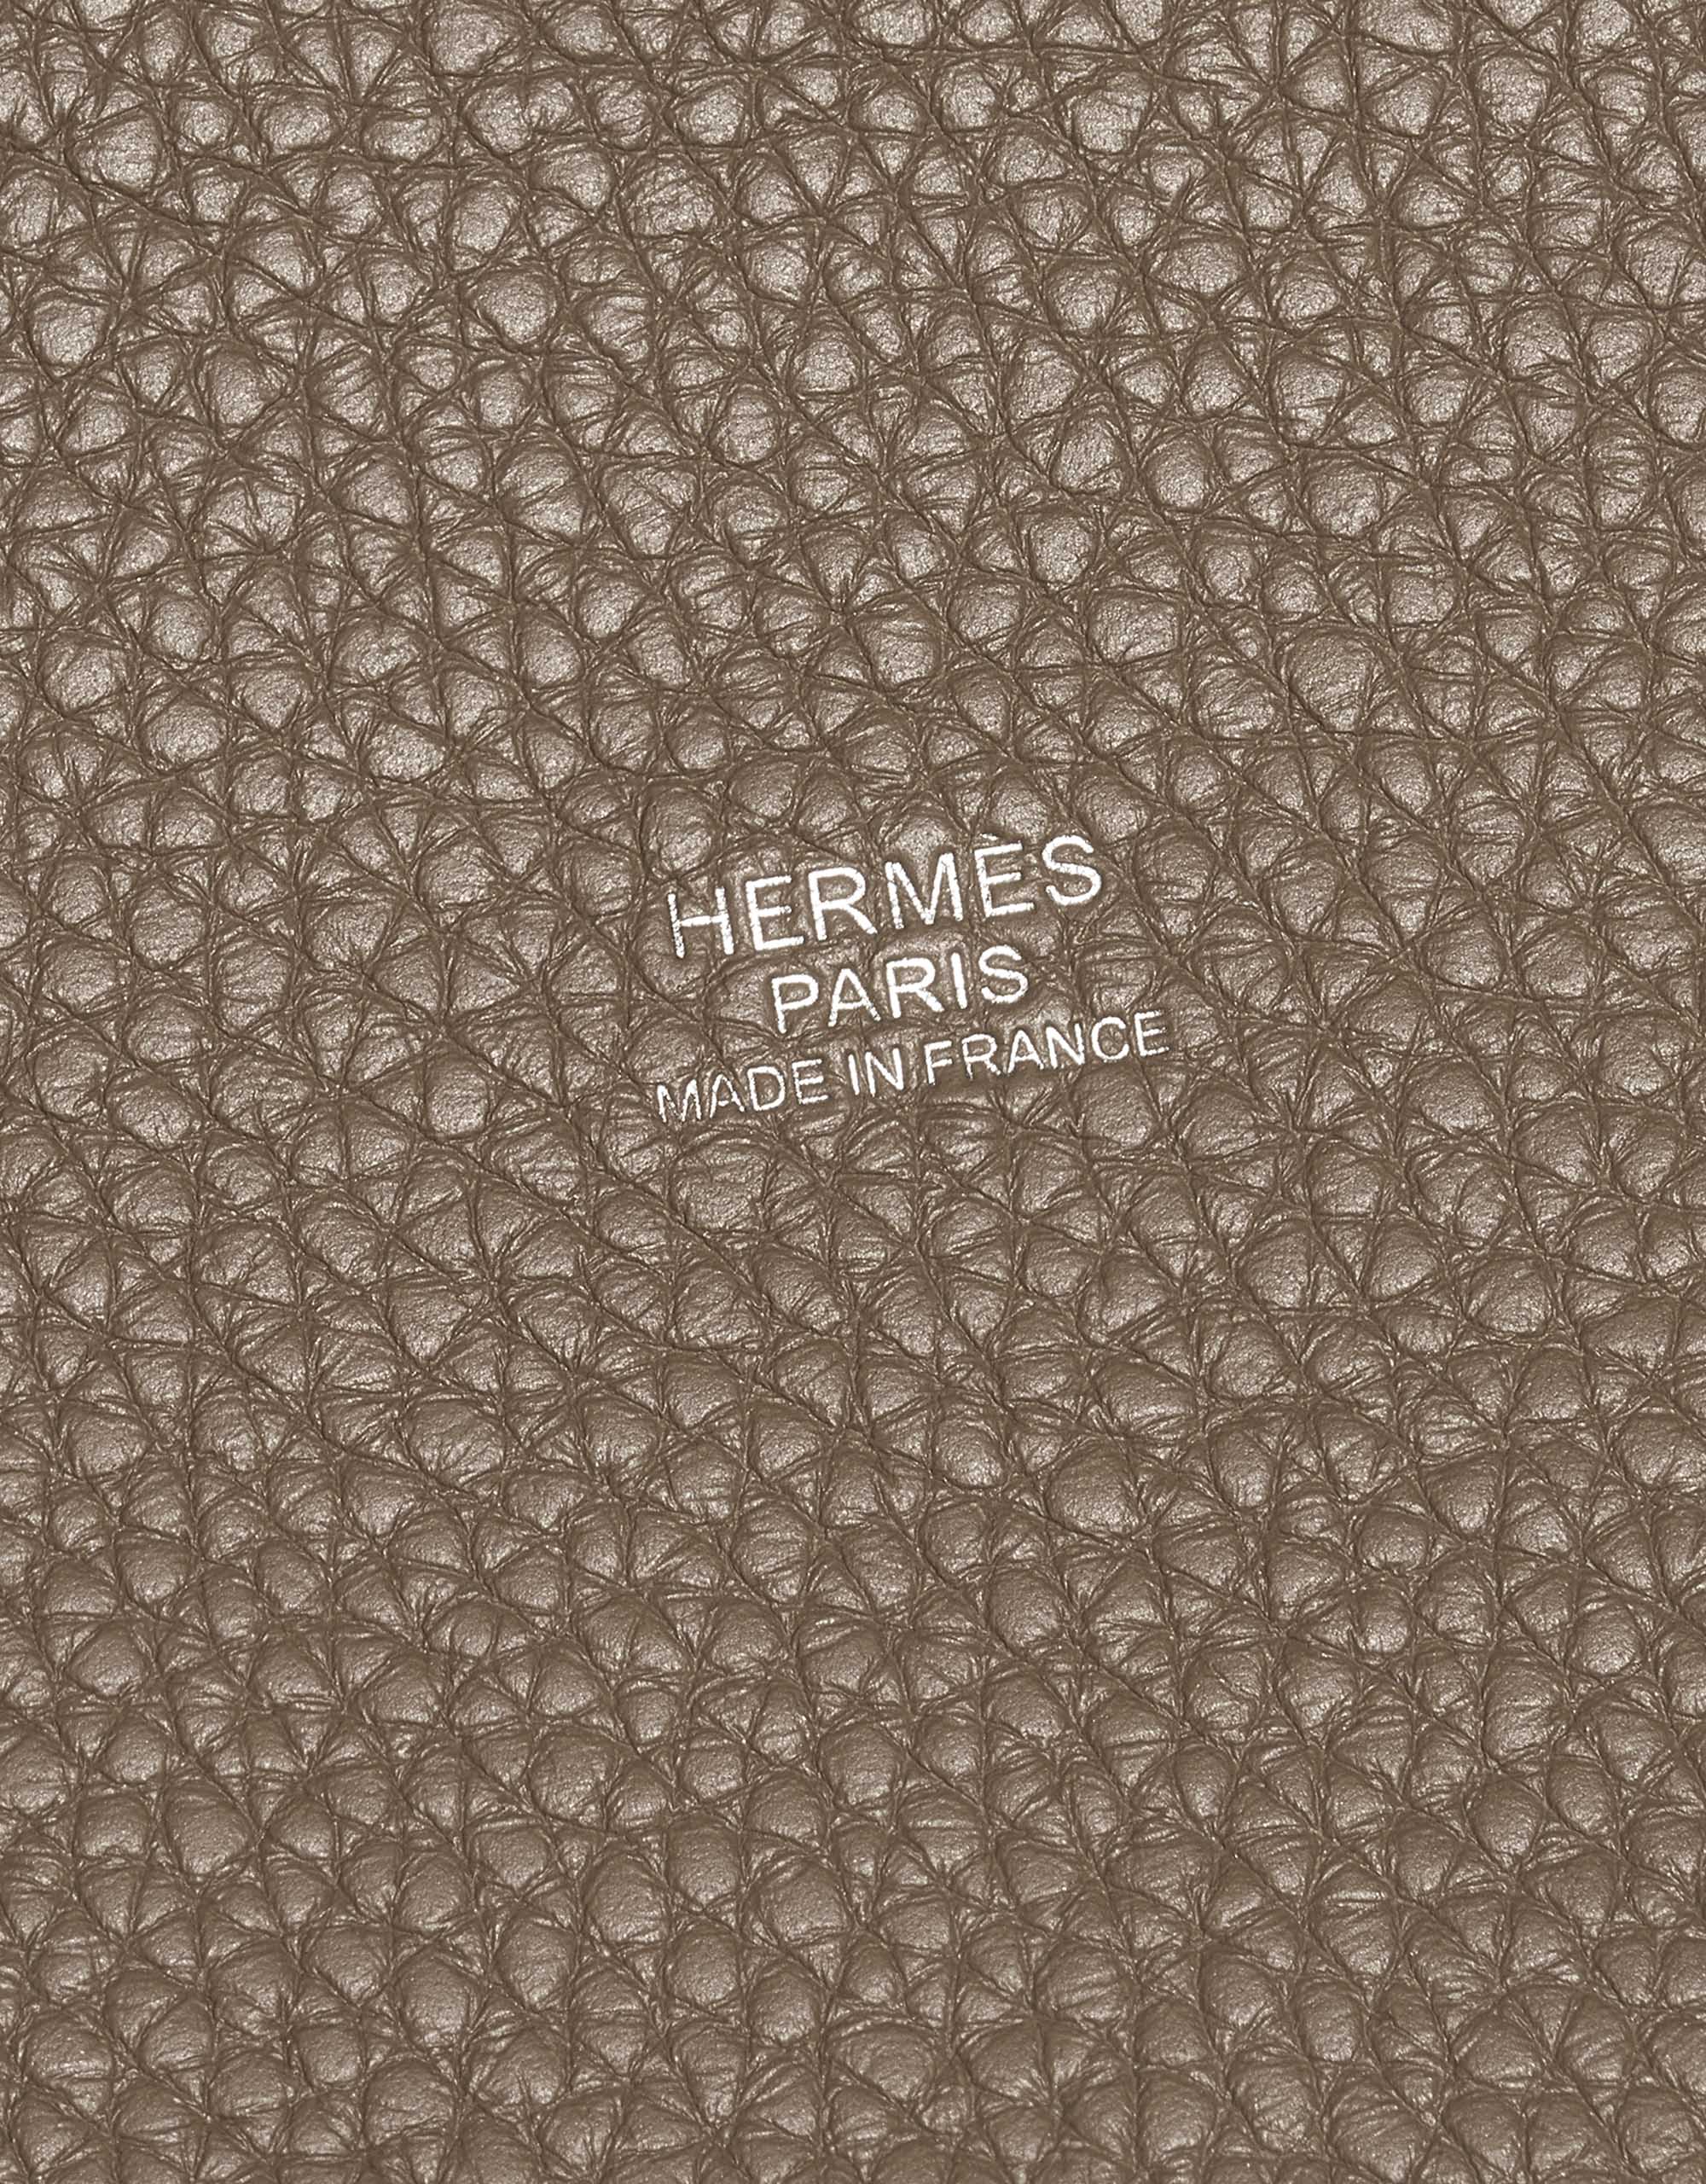 Hermes Etoupe Clemence Leather Picotin Lock 18 Bag – STYLISHTOP